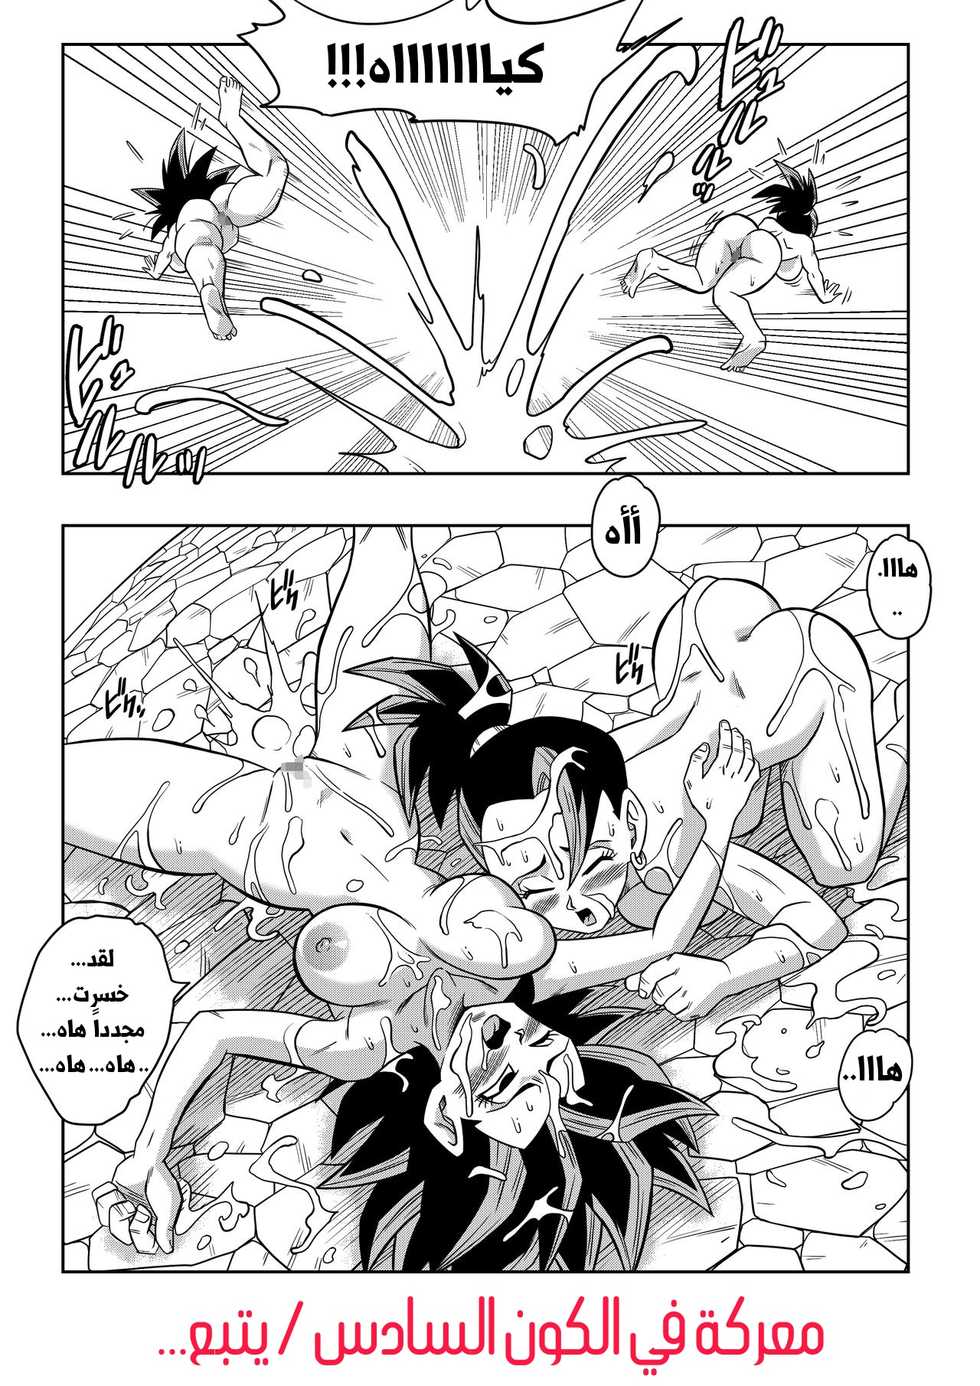 [Yamamoto] Dai Roku Uchuu de no Tatakai!!! | معركة في الكون السادس!!! (Dragon Ball Super)  [Arabic] - Page 22